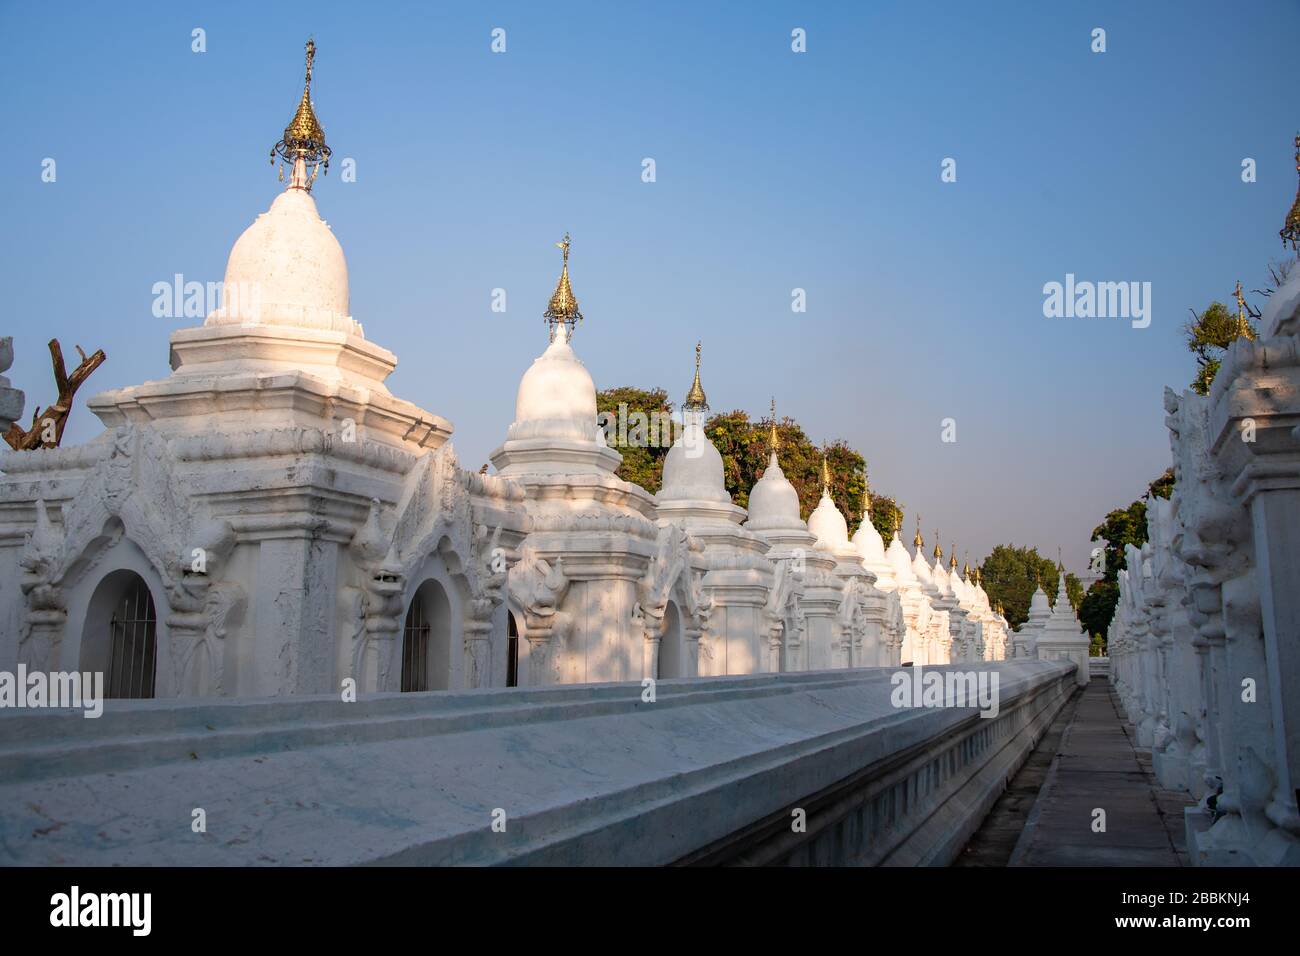 Estupas blancas ornamentadas en la pagoda de Kuthodaw, Mandalay, Myanmar. Filas de hermosas estupas, construidas para albergar el 'Libro más grande del mundo' Foto de stock